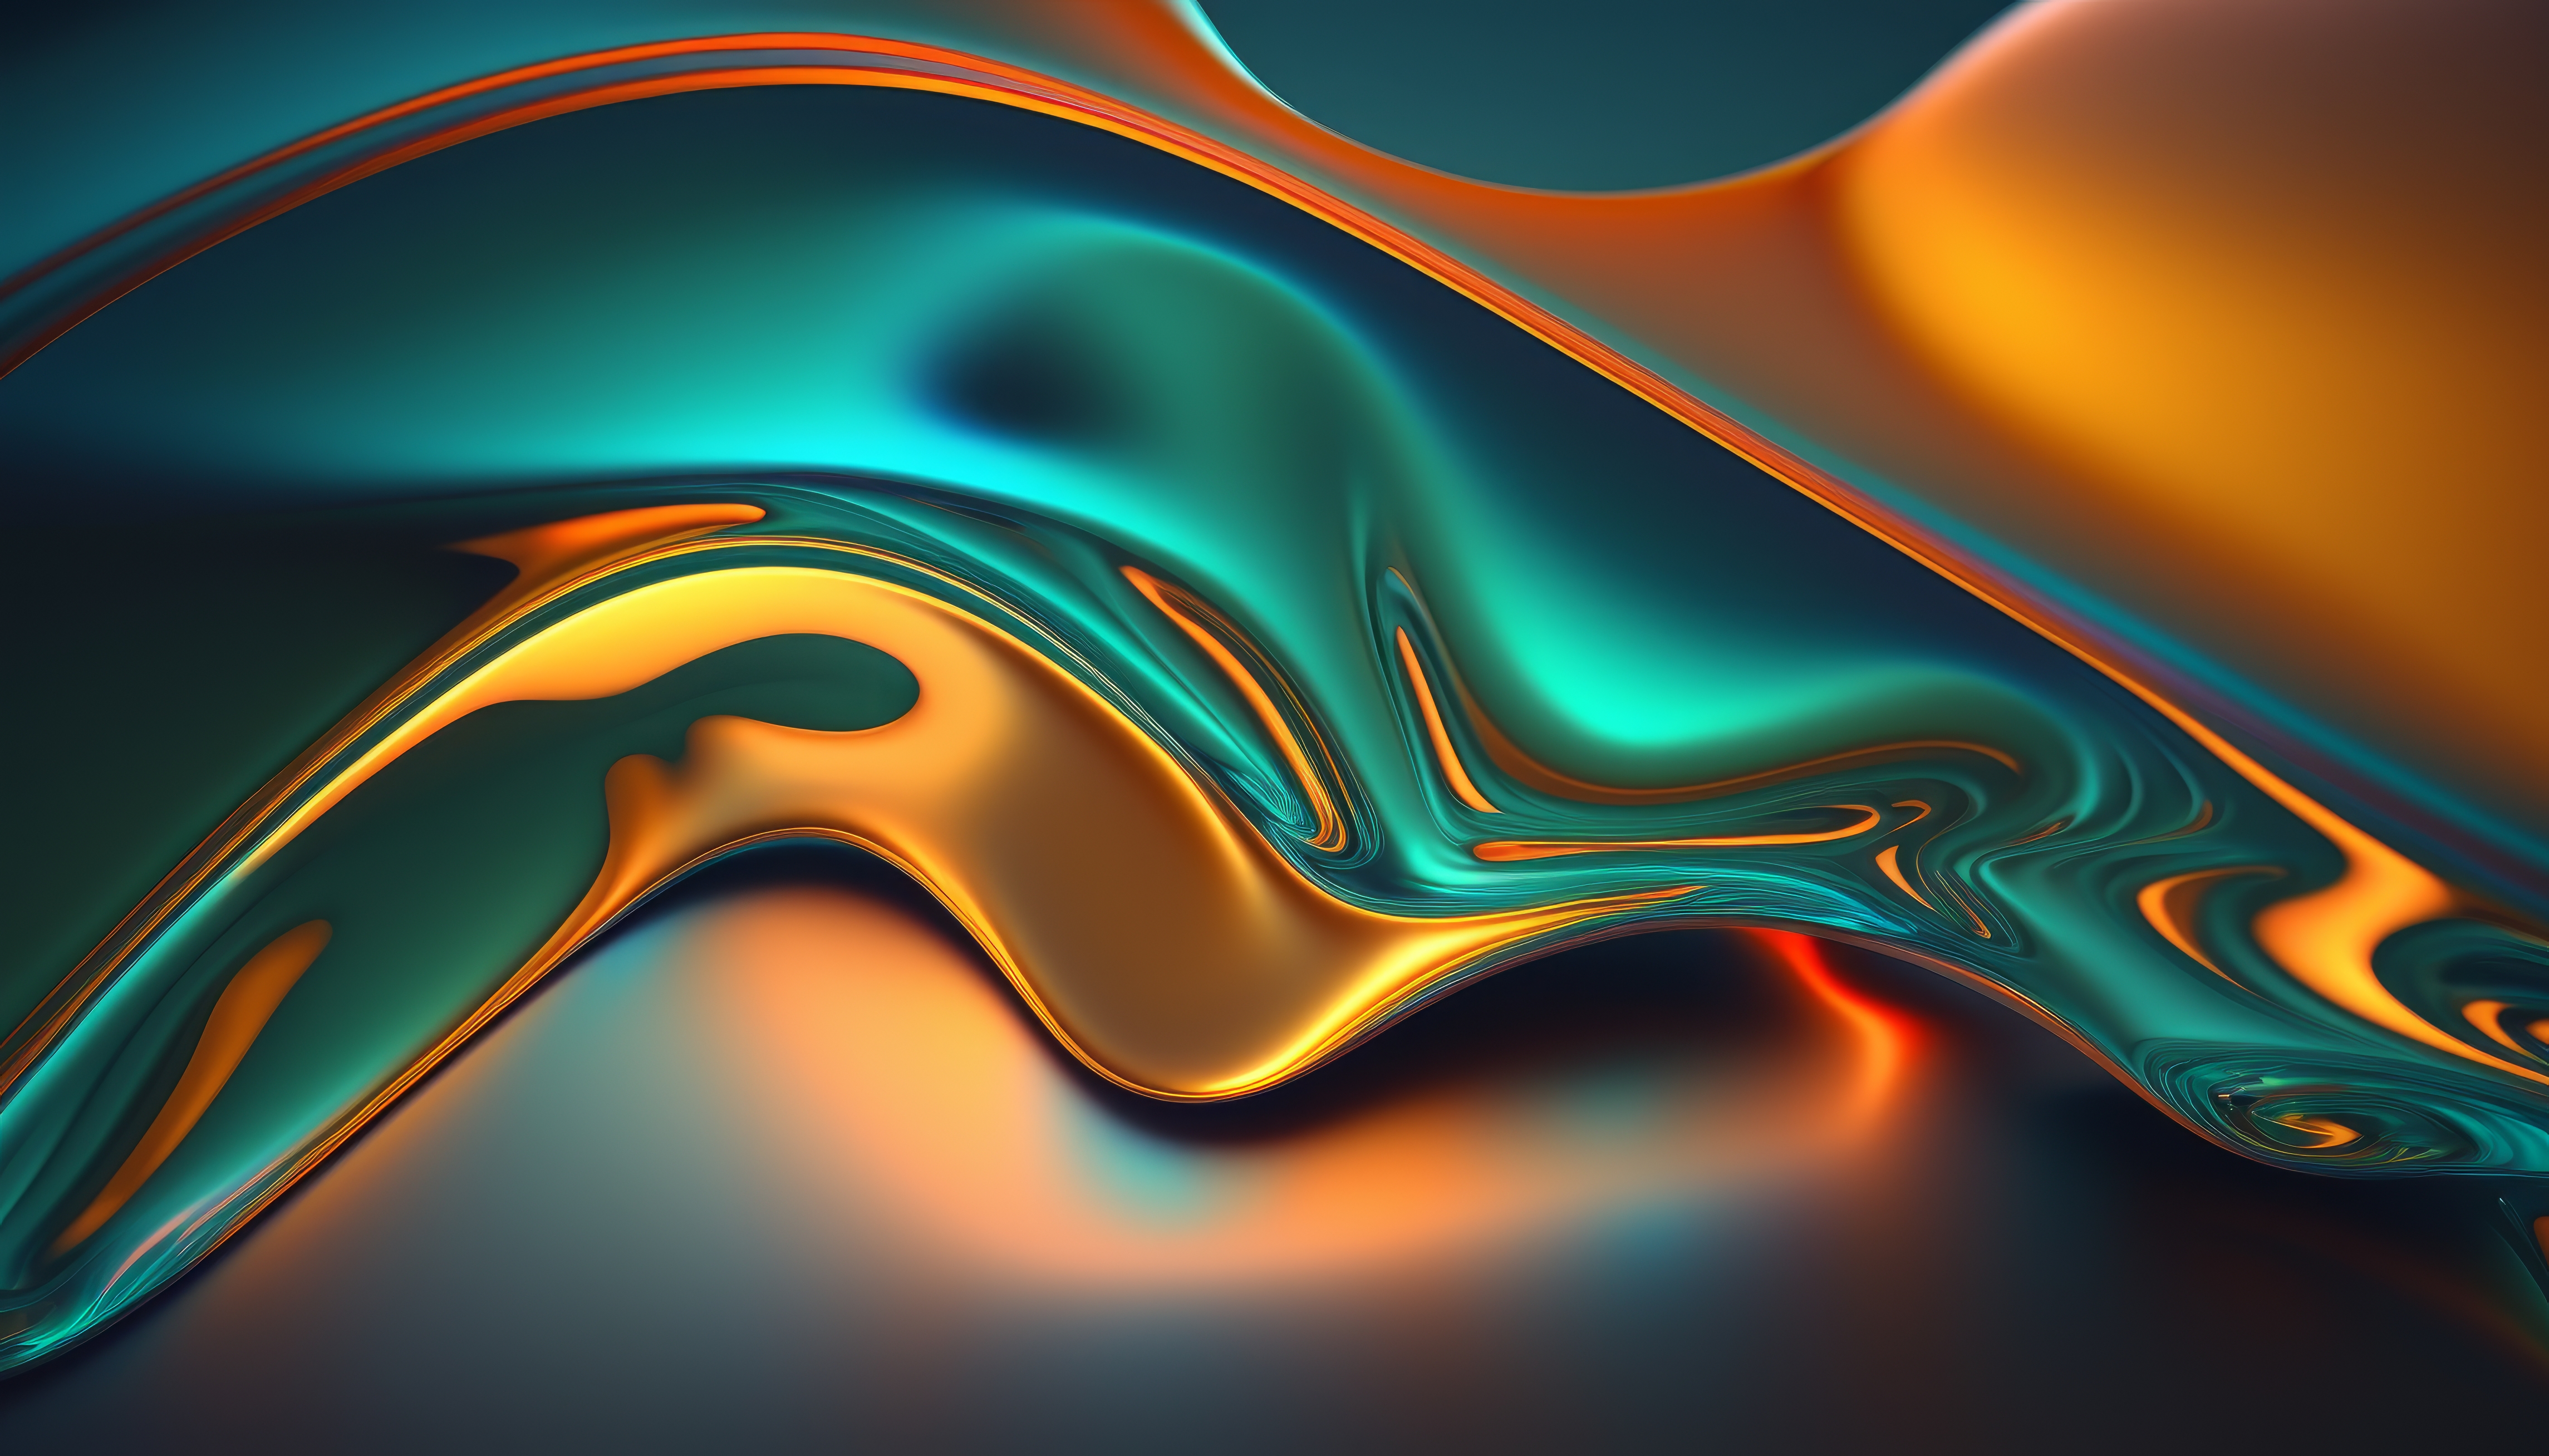 Ai Art Orange Teal Liquid Abstract Simple Background Minimalism 4579x2616